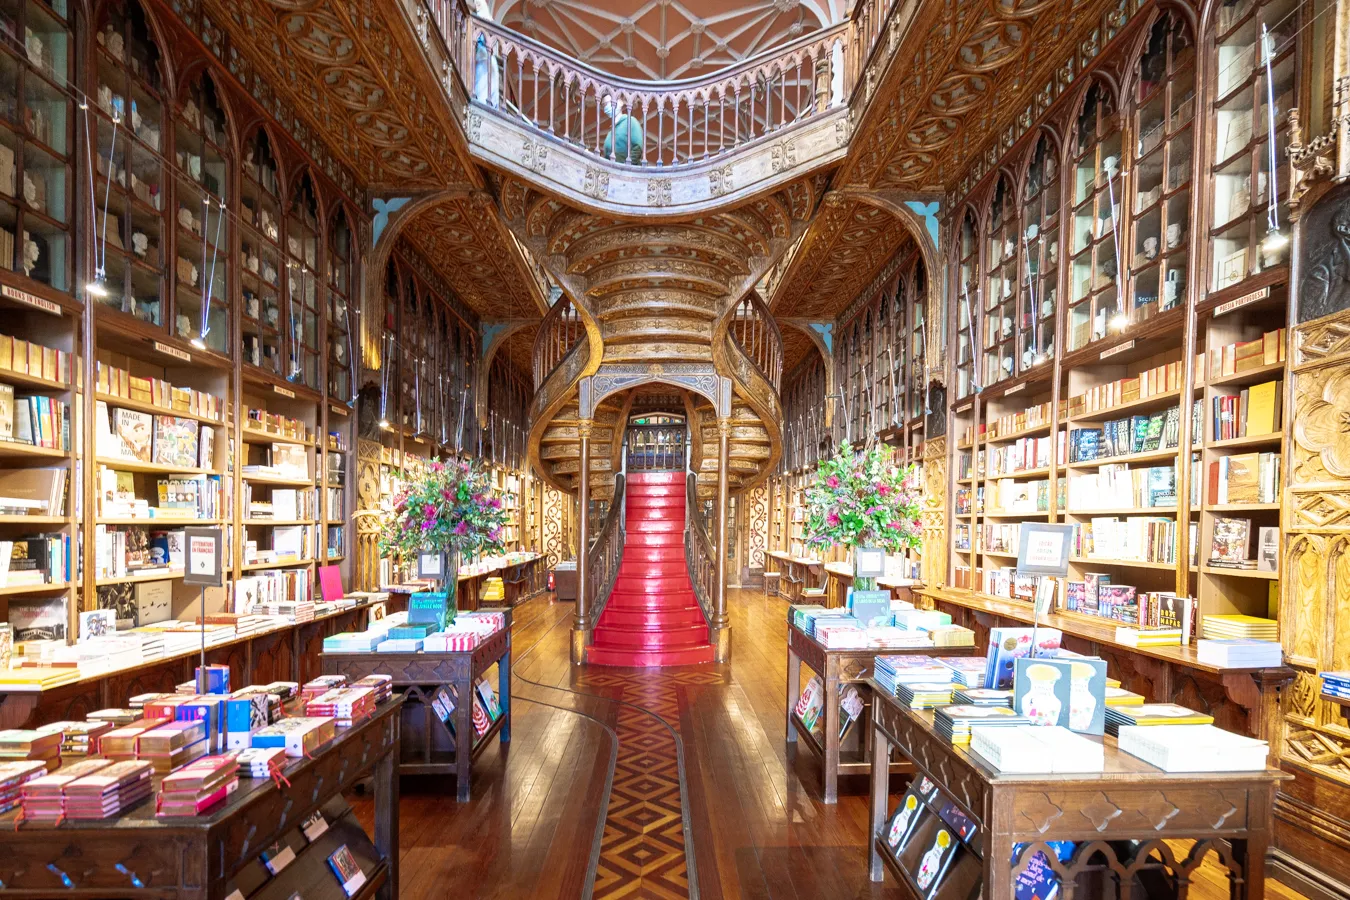 livraria lello porto portugal famous bookstore with red staircase in center